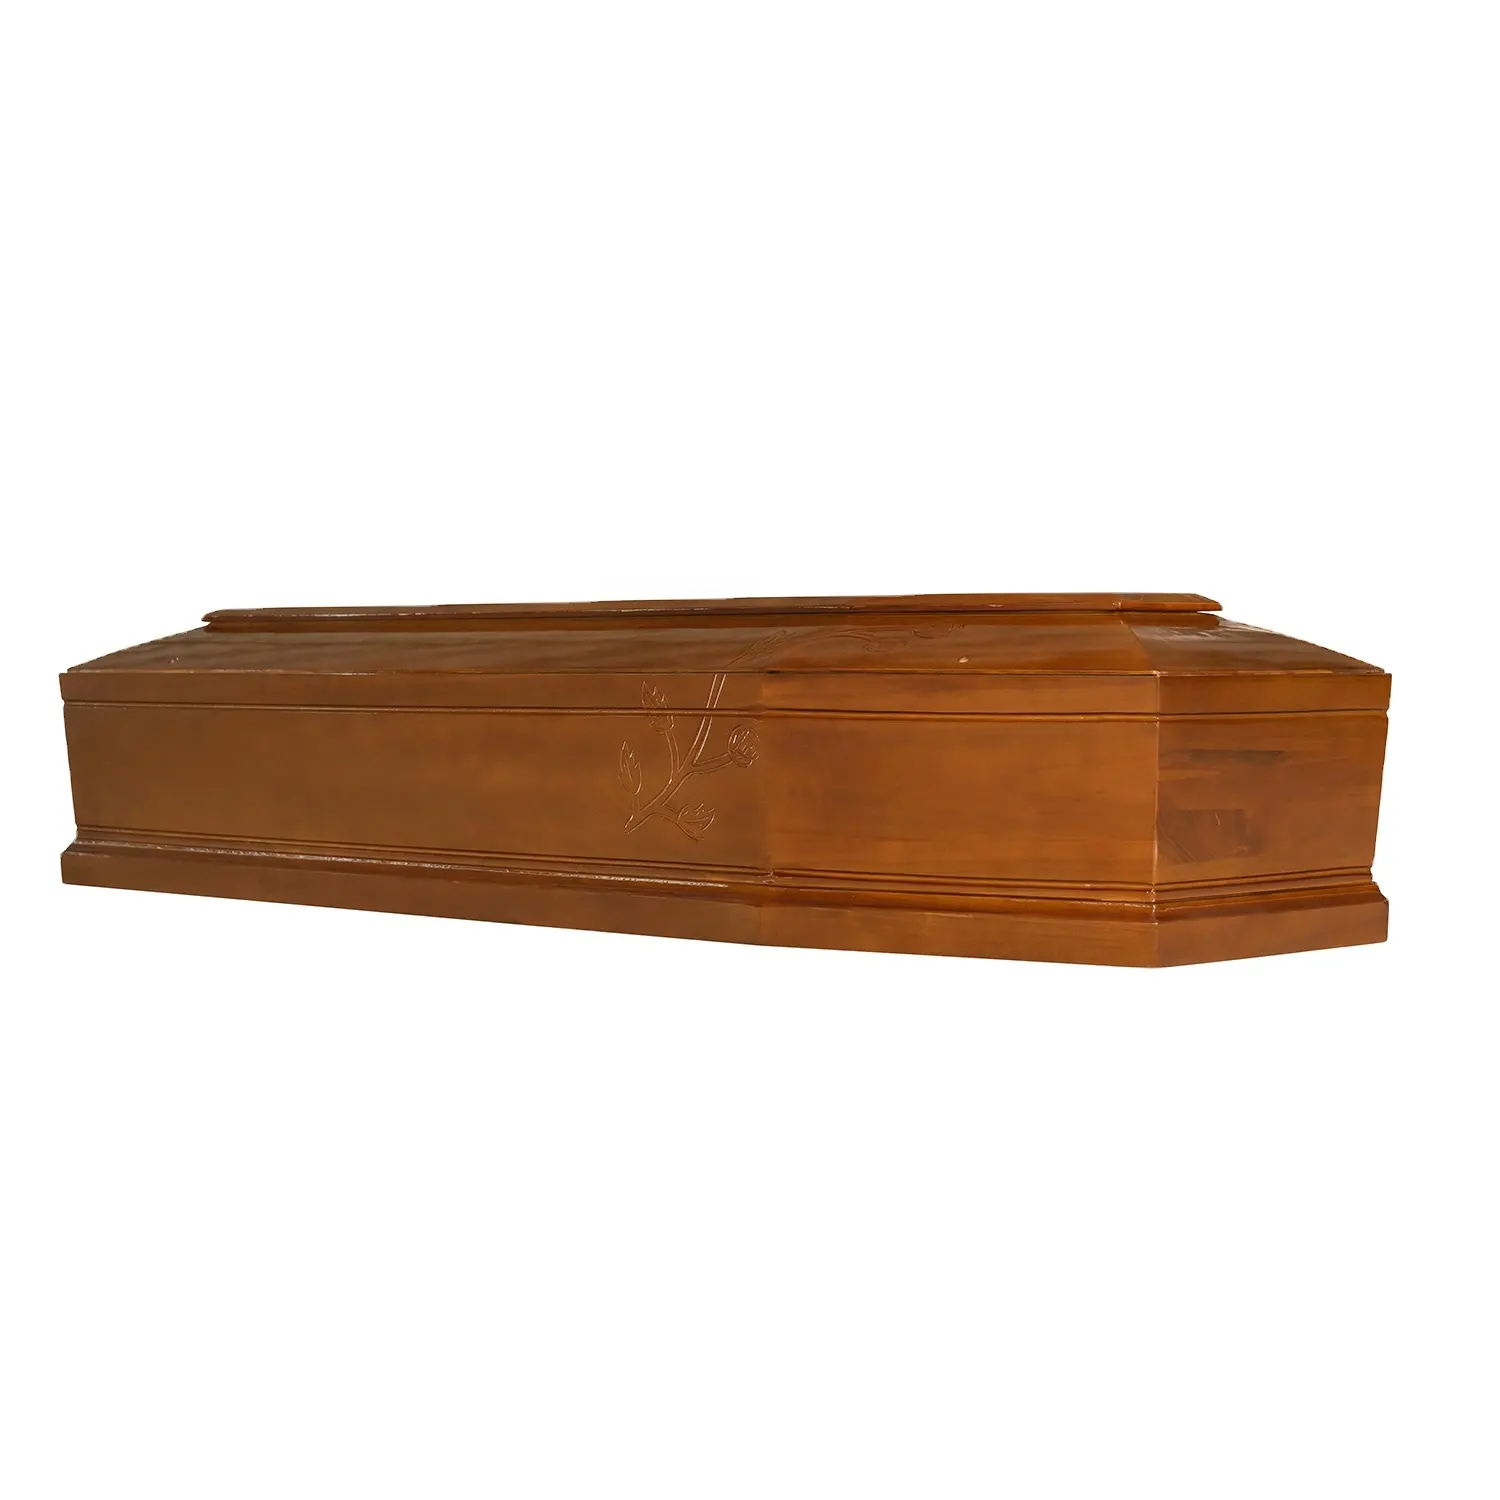 レディメアリーイタリアンスタイルのオーク材の棺葬儀無垢材の埋葬金庫のコンボベッド木製の棺と棺の箱火葬棺